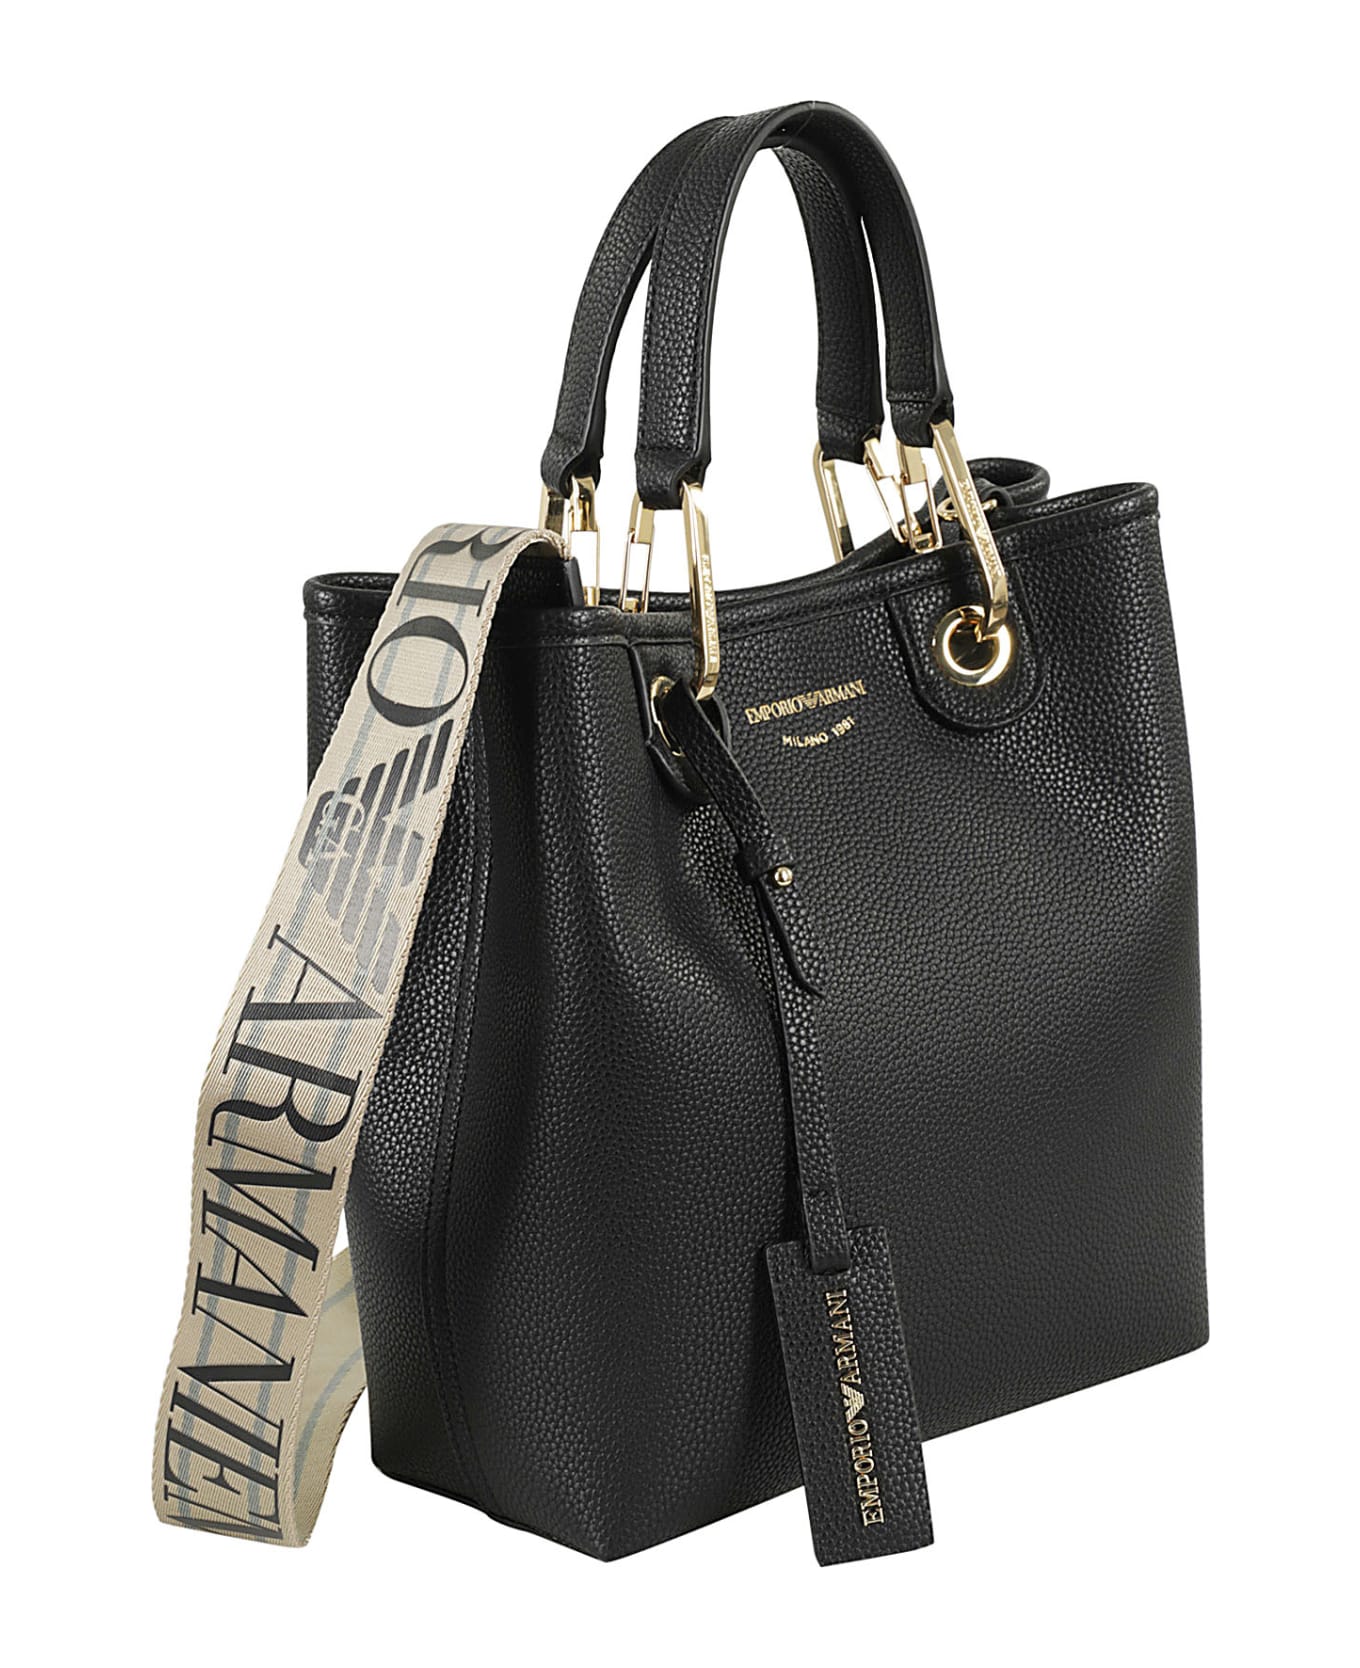 Emporio Armani Shopping Bag - Black Silver